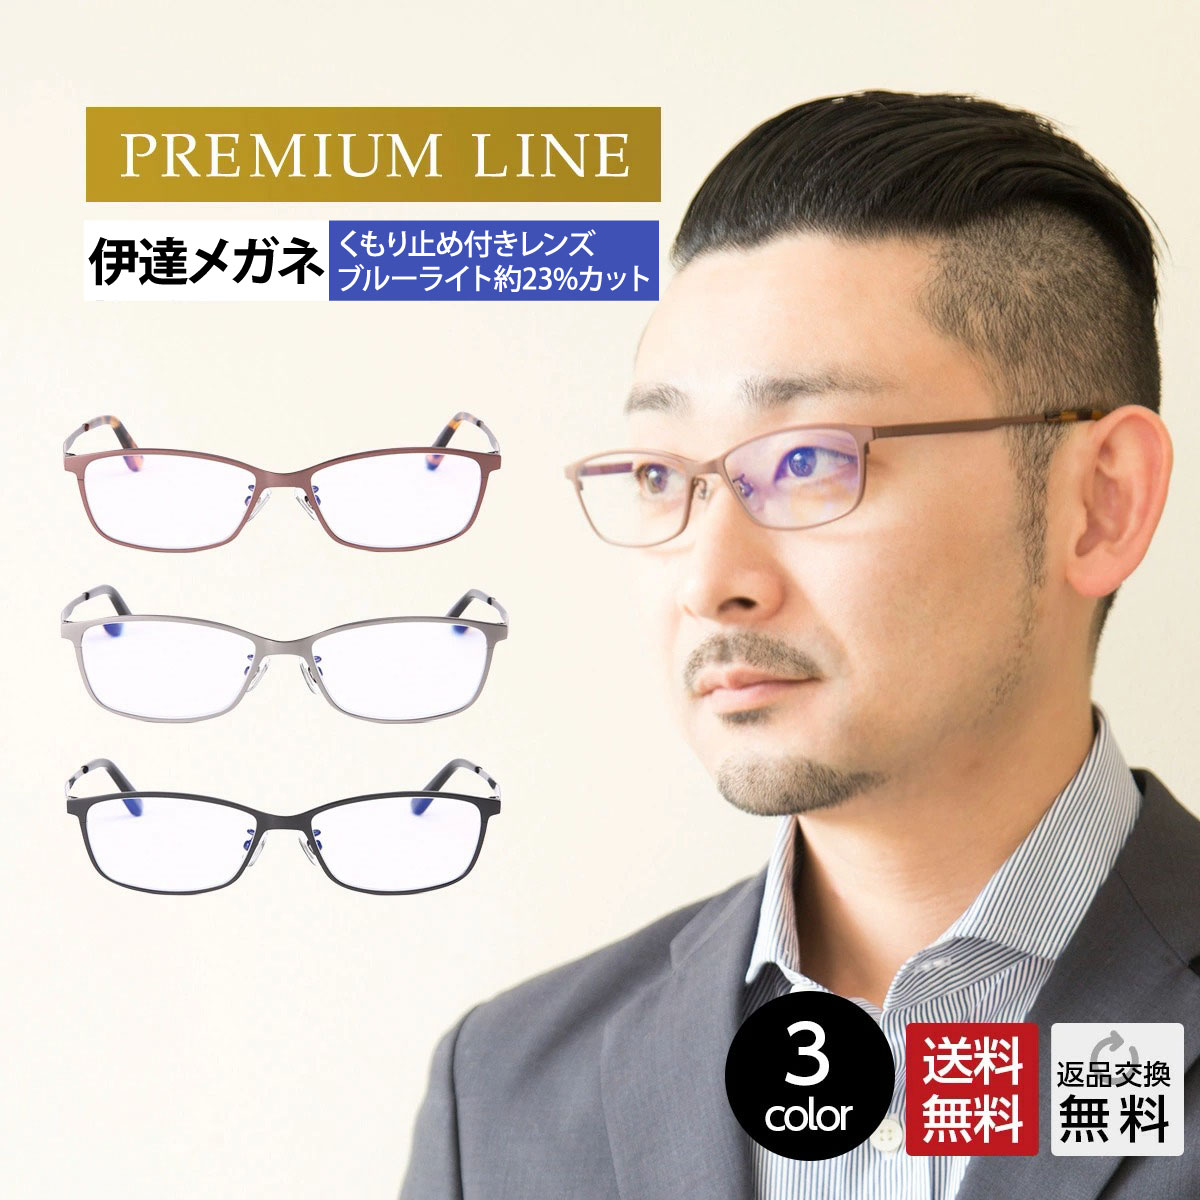 プレミアムなチタンフレームが美しい度なしブルーライトカットメガネ 薄型非球面レンズの高品質のおしゃれ機能メガネです。 ▼▼選べる2本セットのグラスコード▼▼ アクセサリー調、レザー調、シルバーチェーンの全13タイプ 男性 メンズ おしゃれ おすすめ メガネ かっこいい 上品 PCメガネ pc眼鏡 だてめがね だて眼鏡 伊達メガネ 伊達眼鏡 度なし 紫外線カット UVカット UV400 ブルーライト ブルーライトカット ブルーライトカットメガネ ブルーライトカット眼鏡 pc スマホ タブレット パソコン ゲーム 携帯ゲーム スクエア 軽量 軽い 鯖江 チタン メタル 母の日 父の日 敬老の日 誕生日 プレゼント ギフト 贈り物におすすめ型番：m311p 材質：[フレーム］チタン [レンズ］プラスチック カラー：全3色（C1：ブロンズ×ブラウンデミ、C2：マットシルバー×ブラック、C3：ブラック×ブラック） サイズ：A：レンズ高さ：32mm、B：フロント幅：139mm、C：ブリッジ幅：17mm、　　　　D：レンズ幅：54mm、E：テンプル長さ：140mm 重量：約14.5g 【MIDIの返品・交換無料サービス】 お手元に届いた商品の度数・デザインやカラーが合わなかった場合ご注文日より10日間無料でレンズ交換、または返品ができます。 詳しくは 「お問い合わせ」 もしくは、お電話にてお問い合わせくださいませ。電話番号：0120-813-689平日10:00-17:00(12:00-13:00は除く)